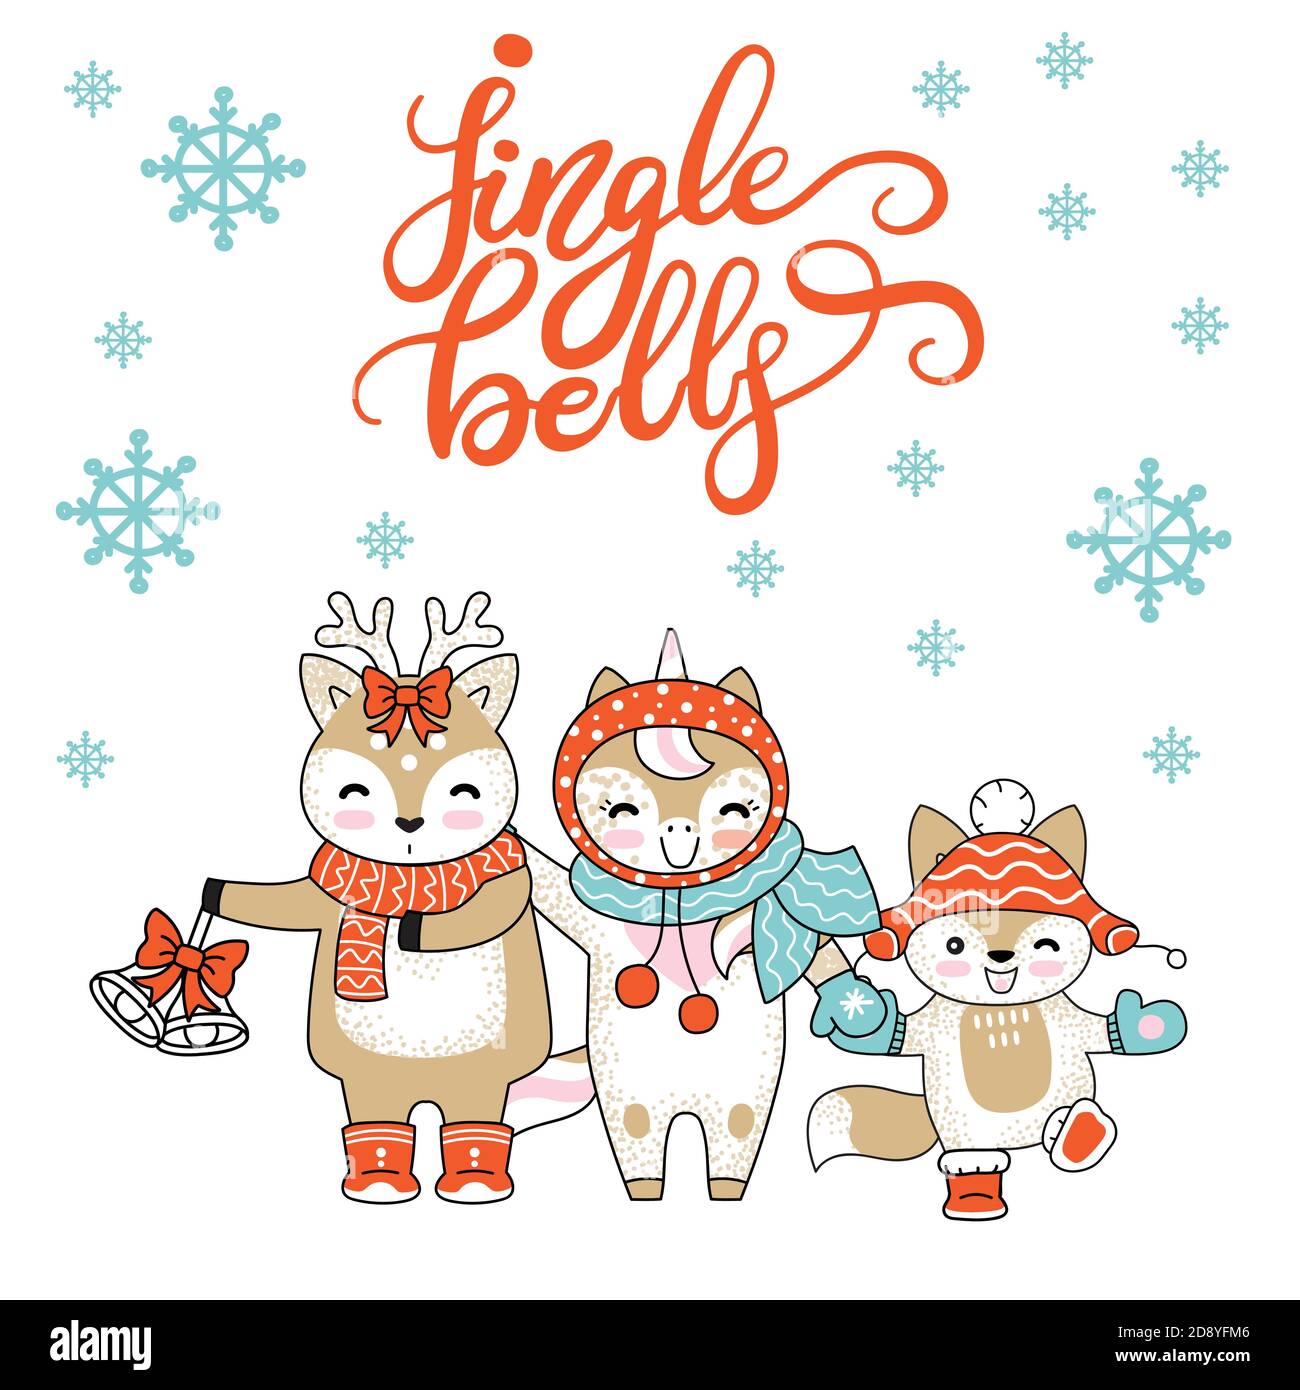 Weihnachtskarte Glückwünsche mit niedlichen Zeichen Tiere Stock Vektor